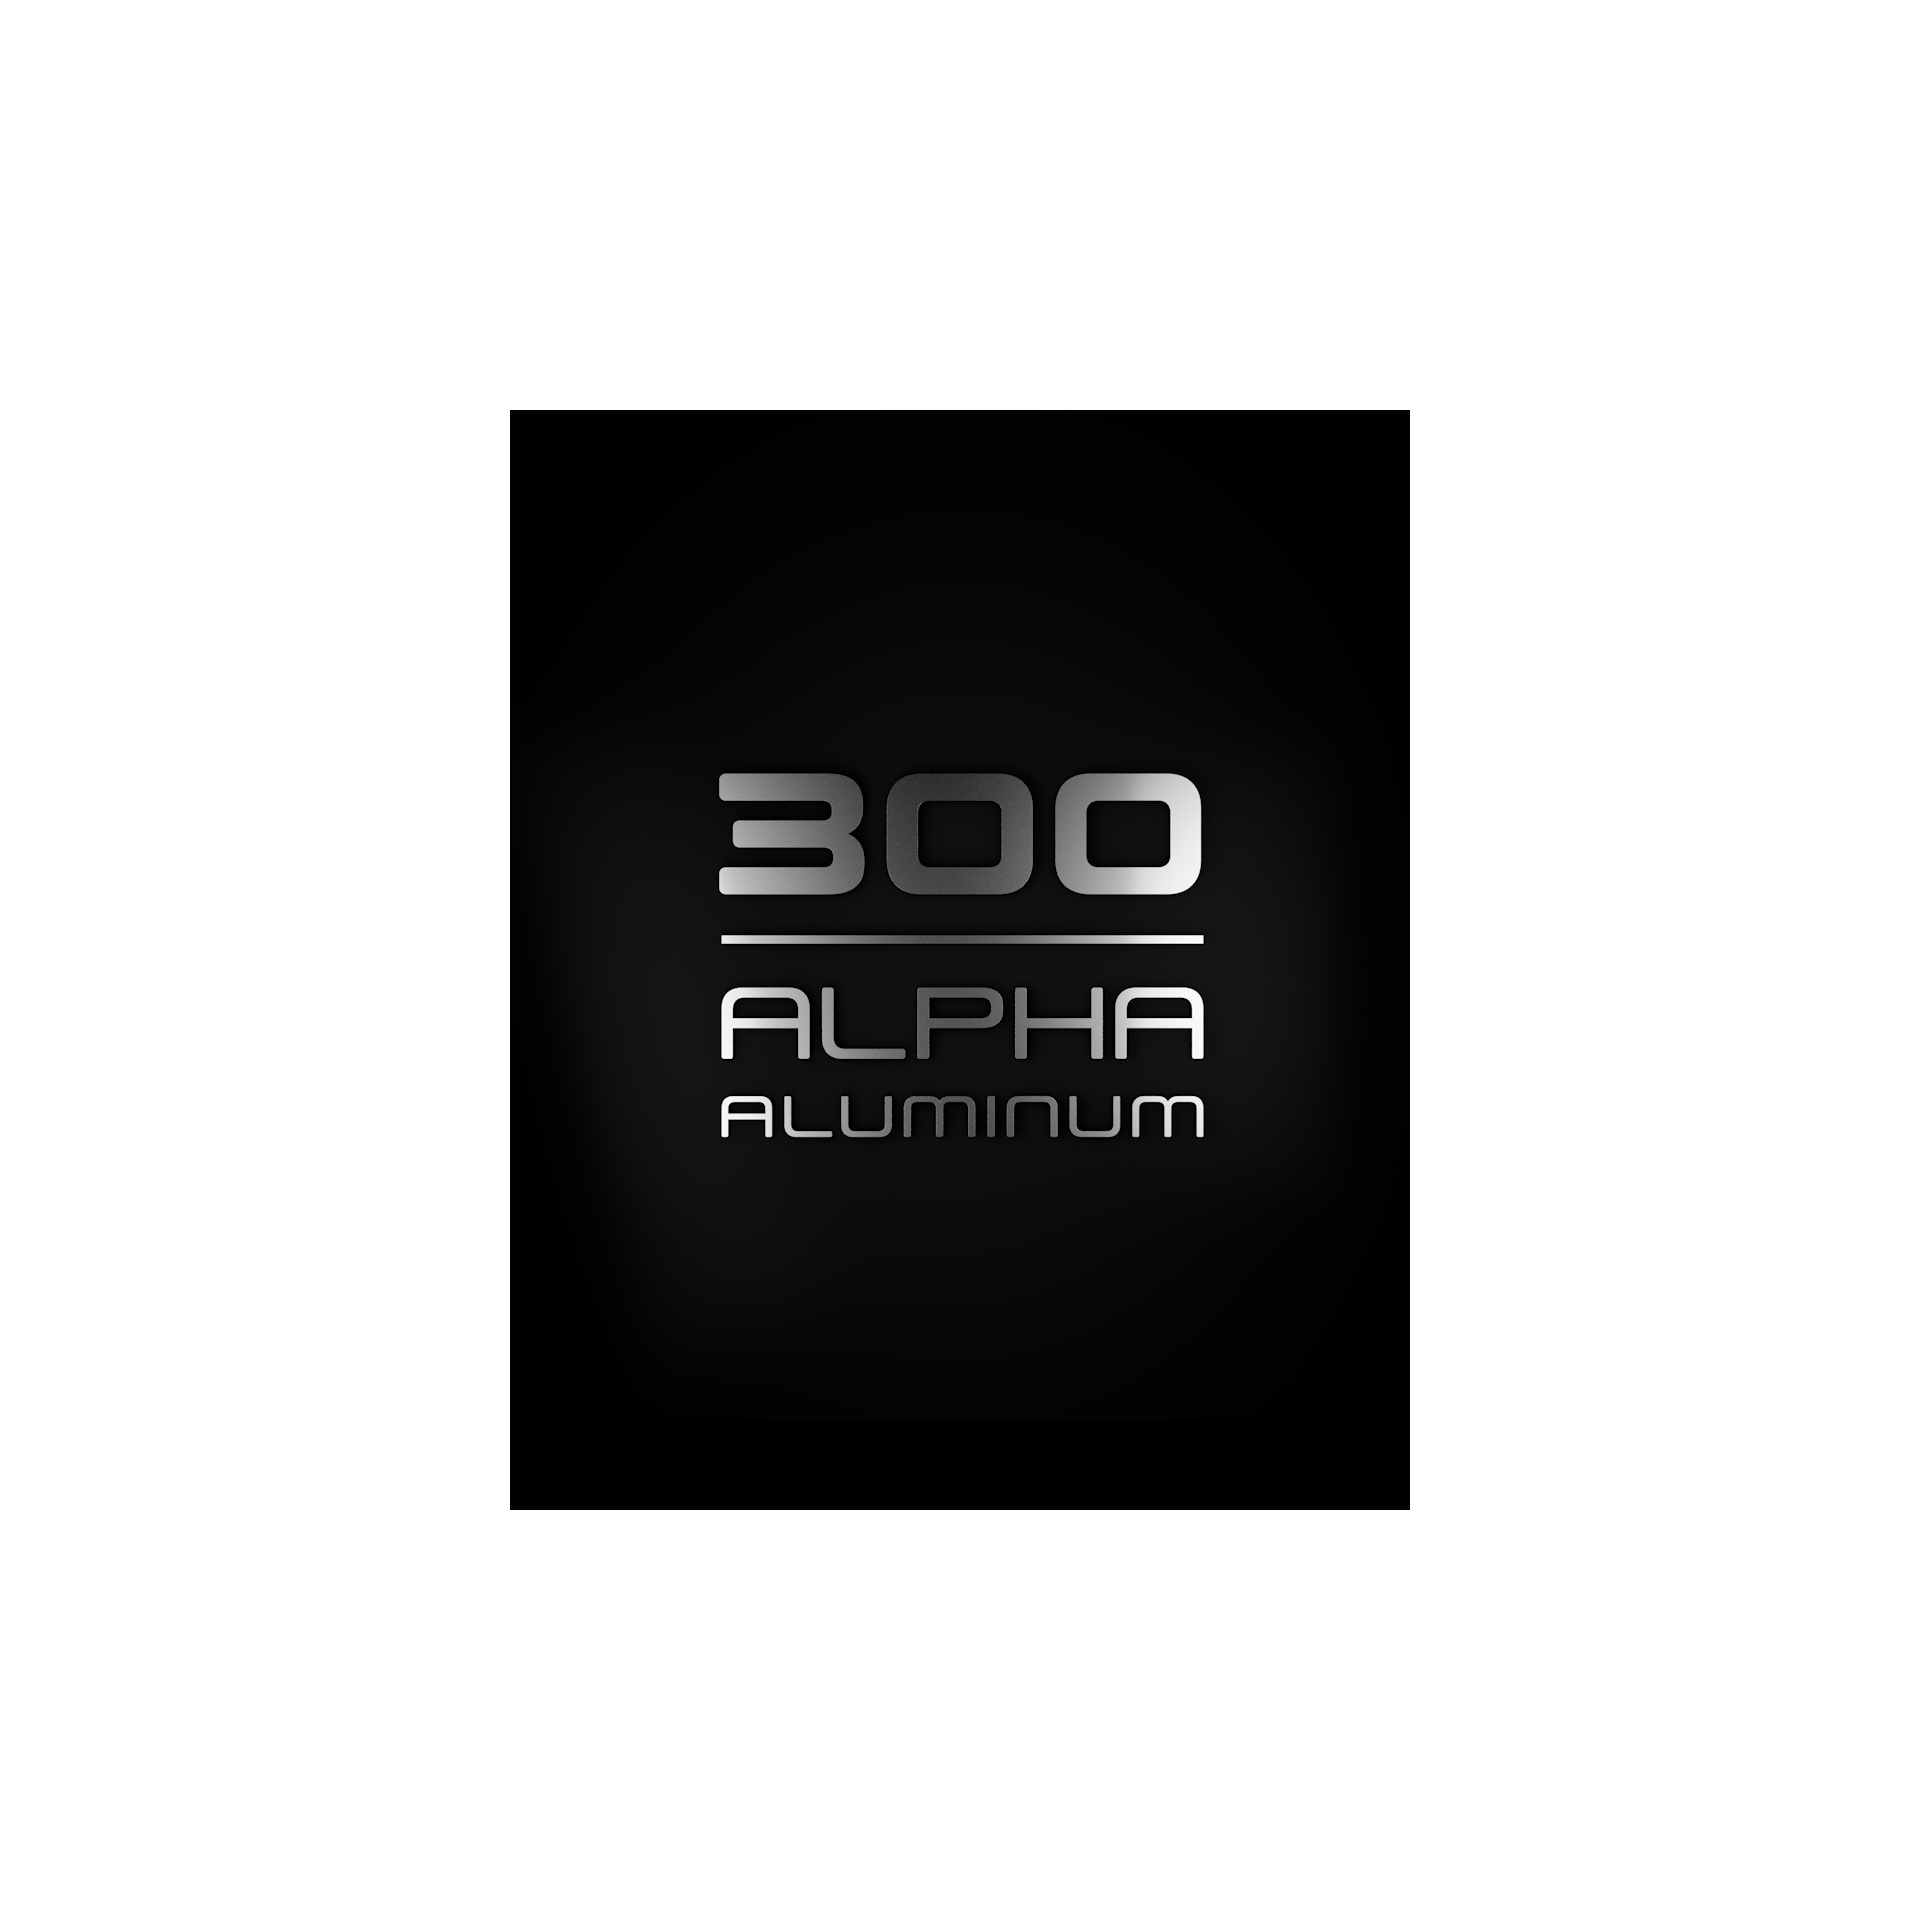 300 シリーズ Alpha アルミ